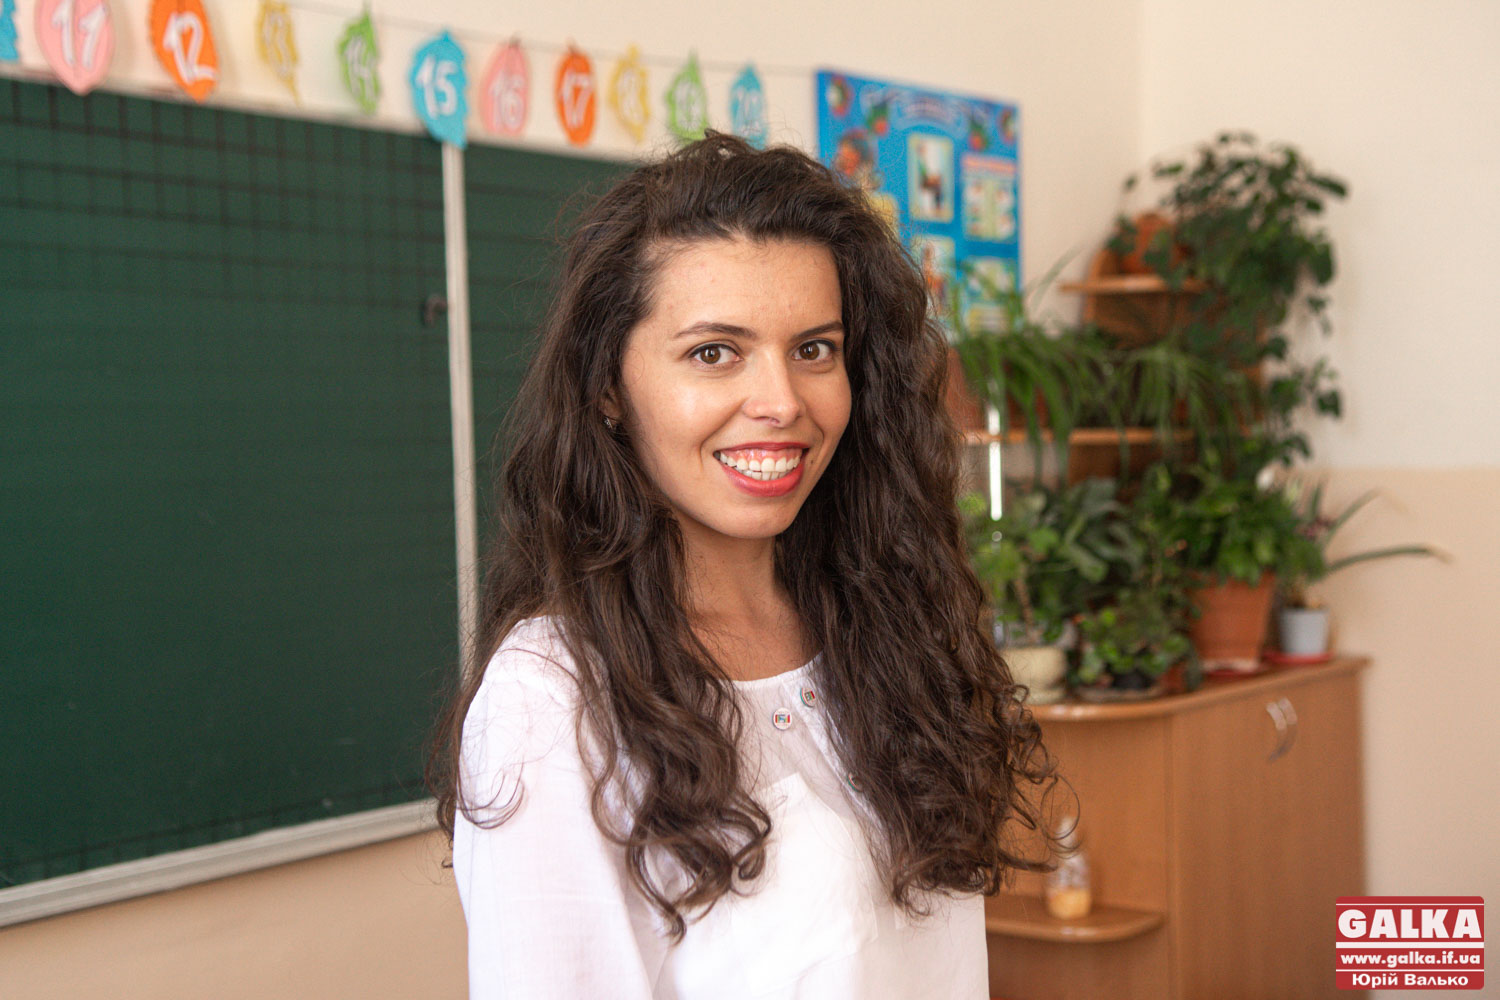 “Вже час і наяву повчитися”, – франківська освітянка Леся Павлюк з ТОП-50 найпрогресивніших учителів України (ФОТО)